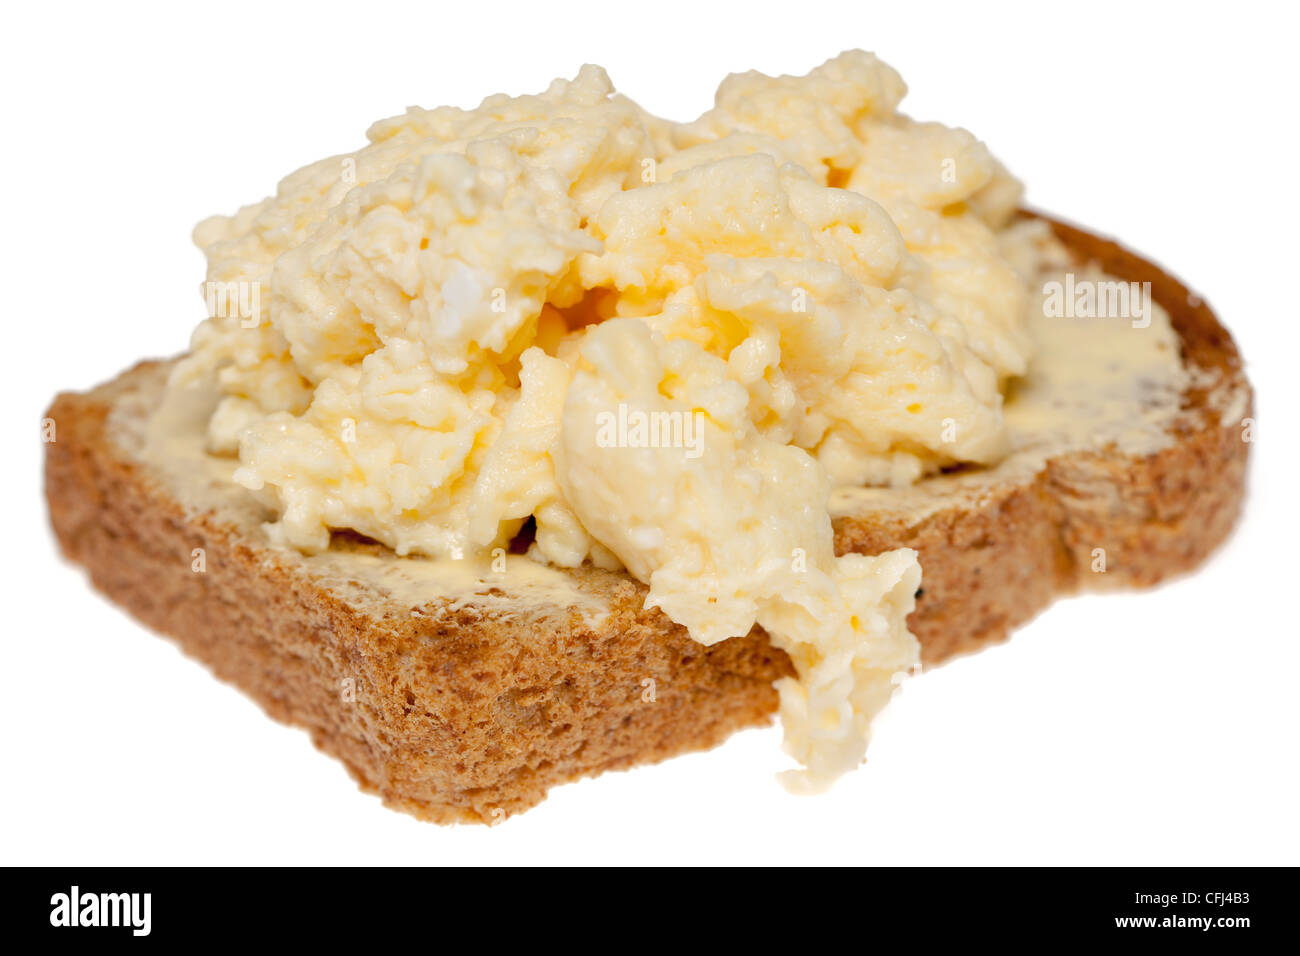 Scrambled egg on wholemeal toast Stock Photo